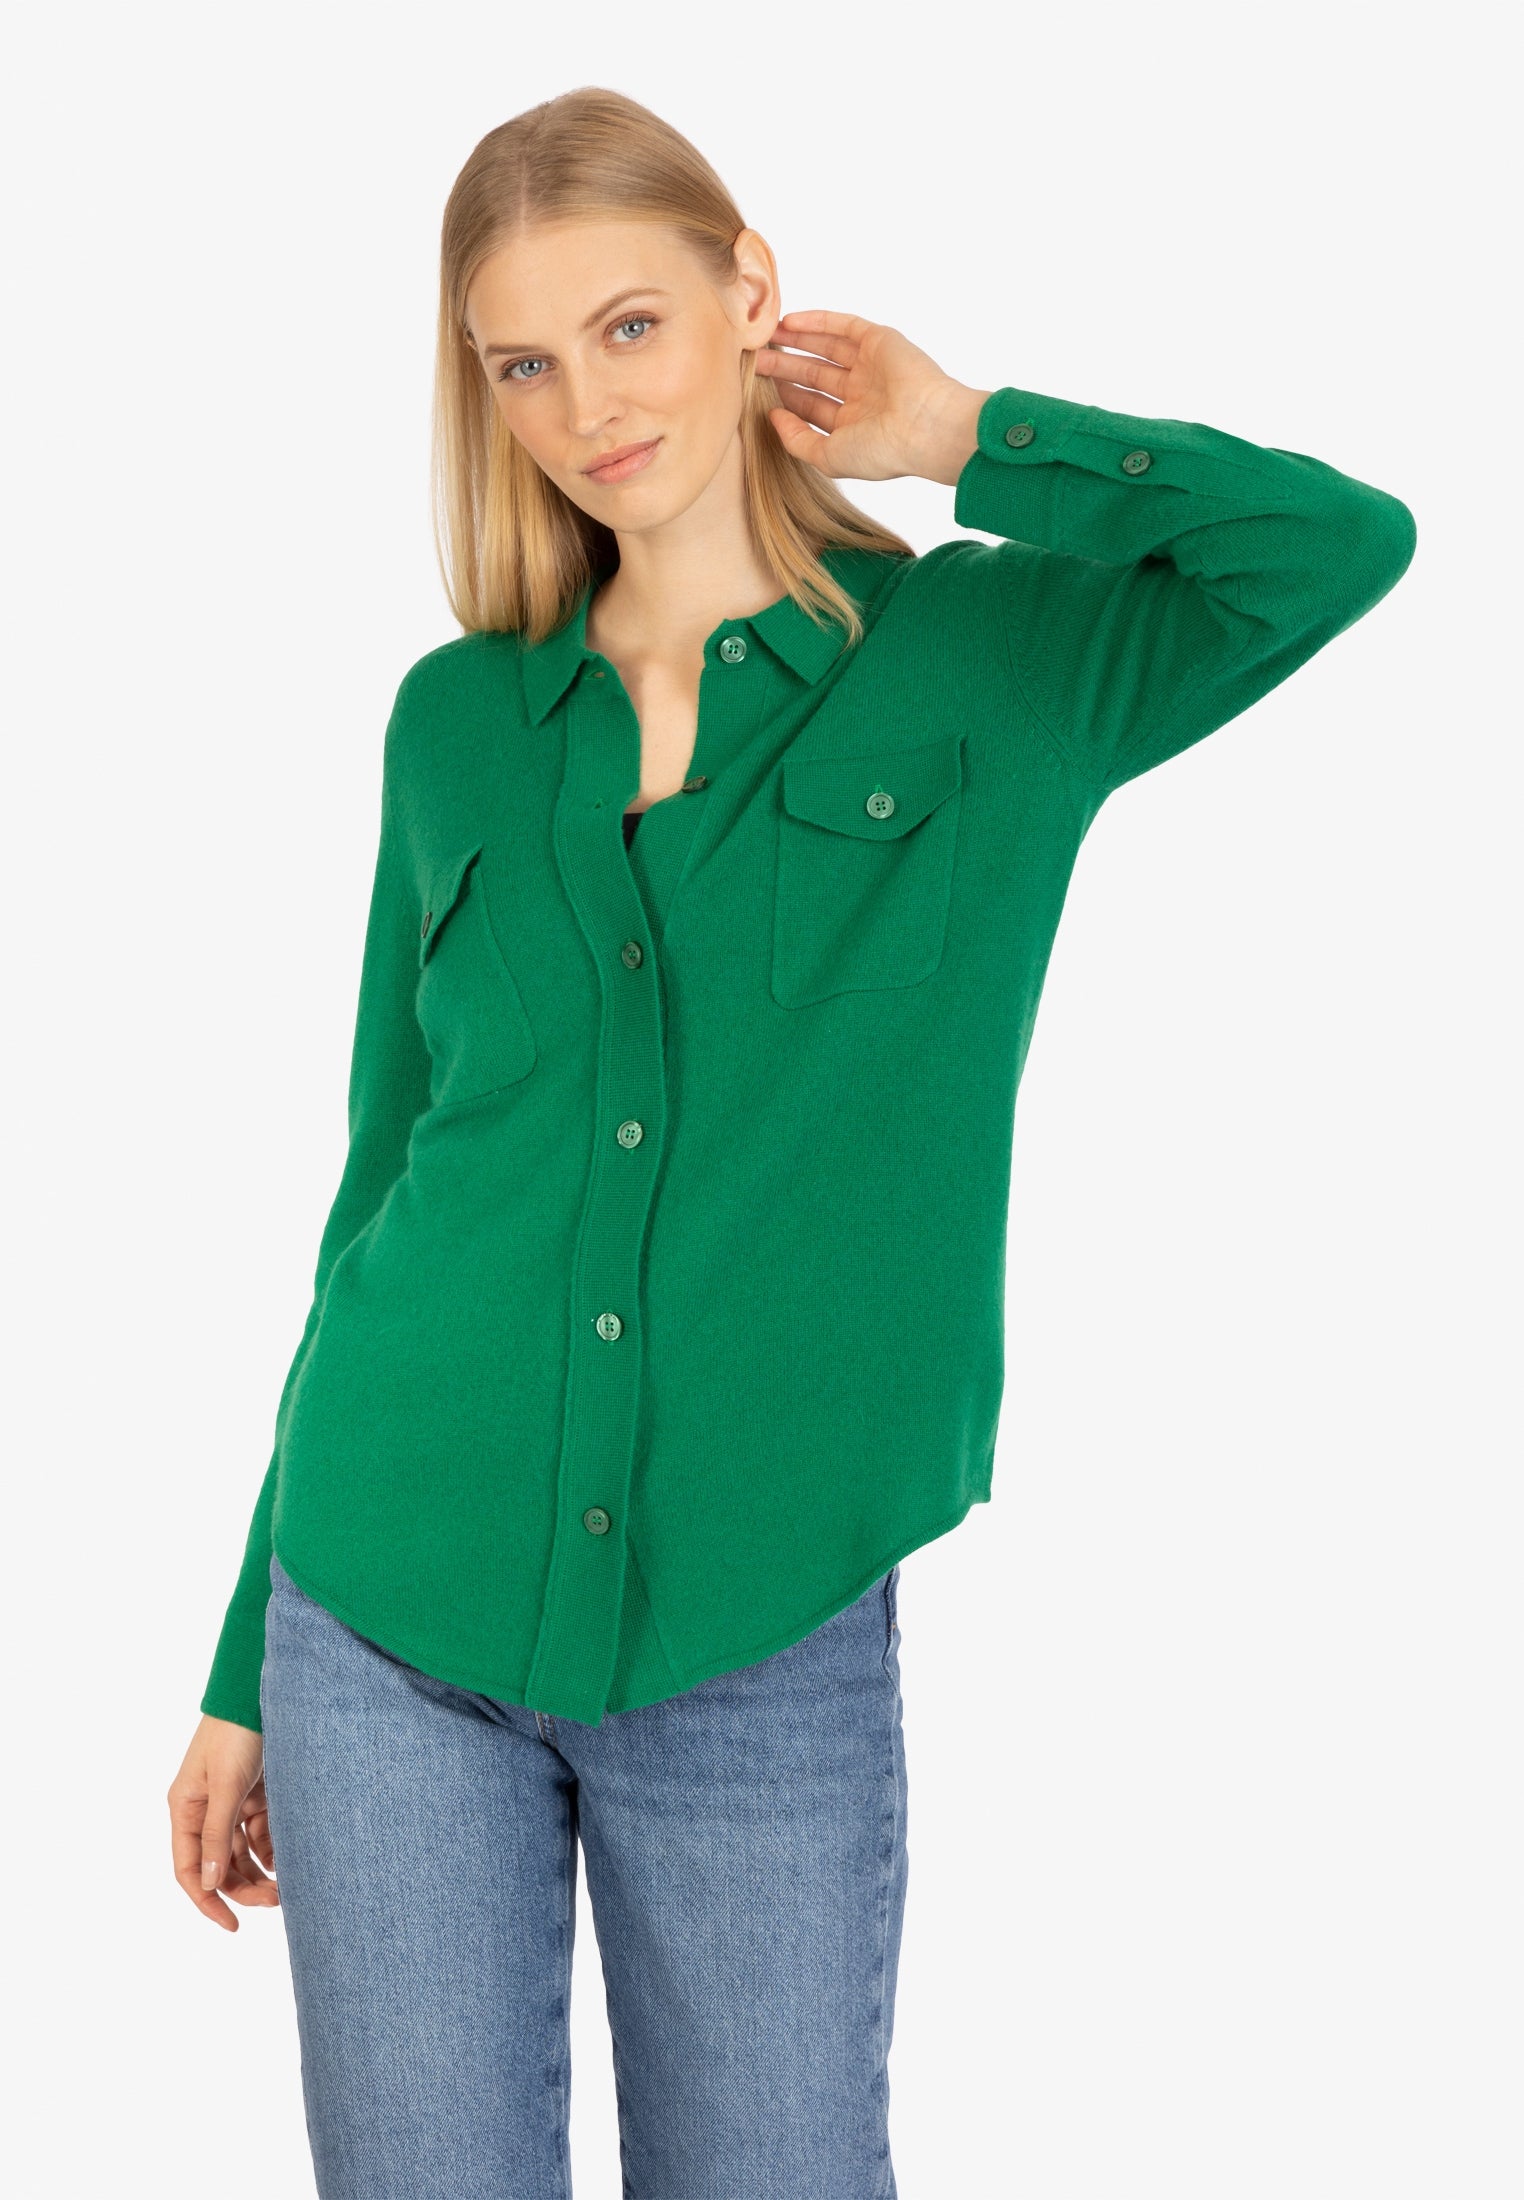 RAINBOW CASHMERE Strick-Hemd vorn durchgeknöpft | grün